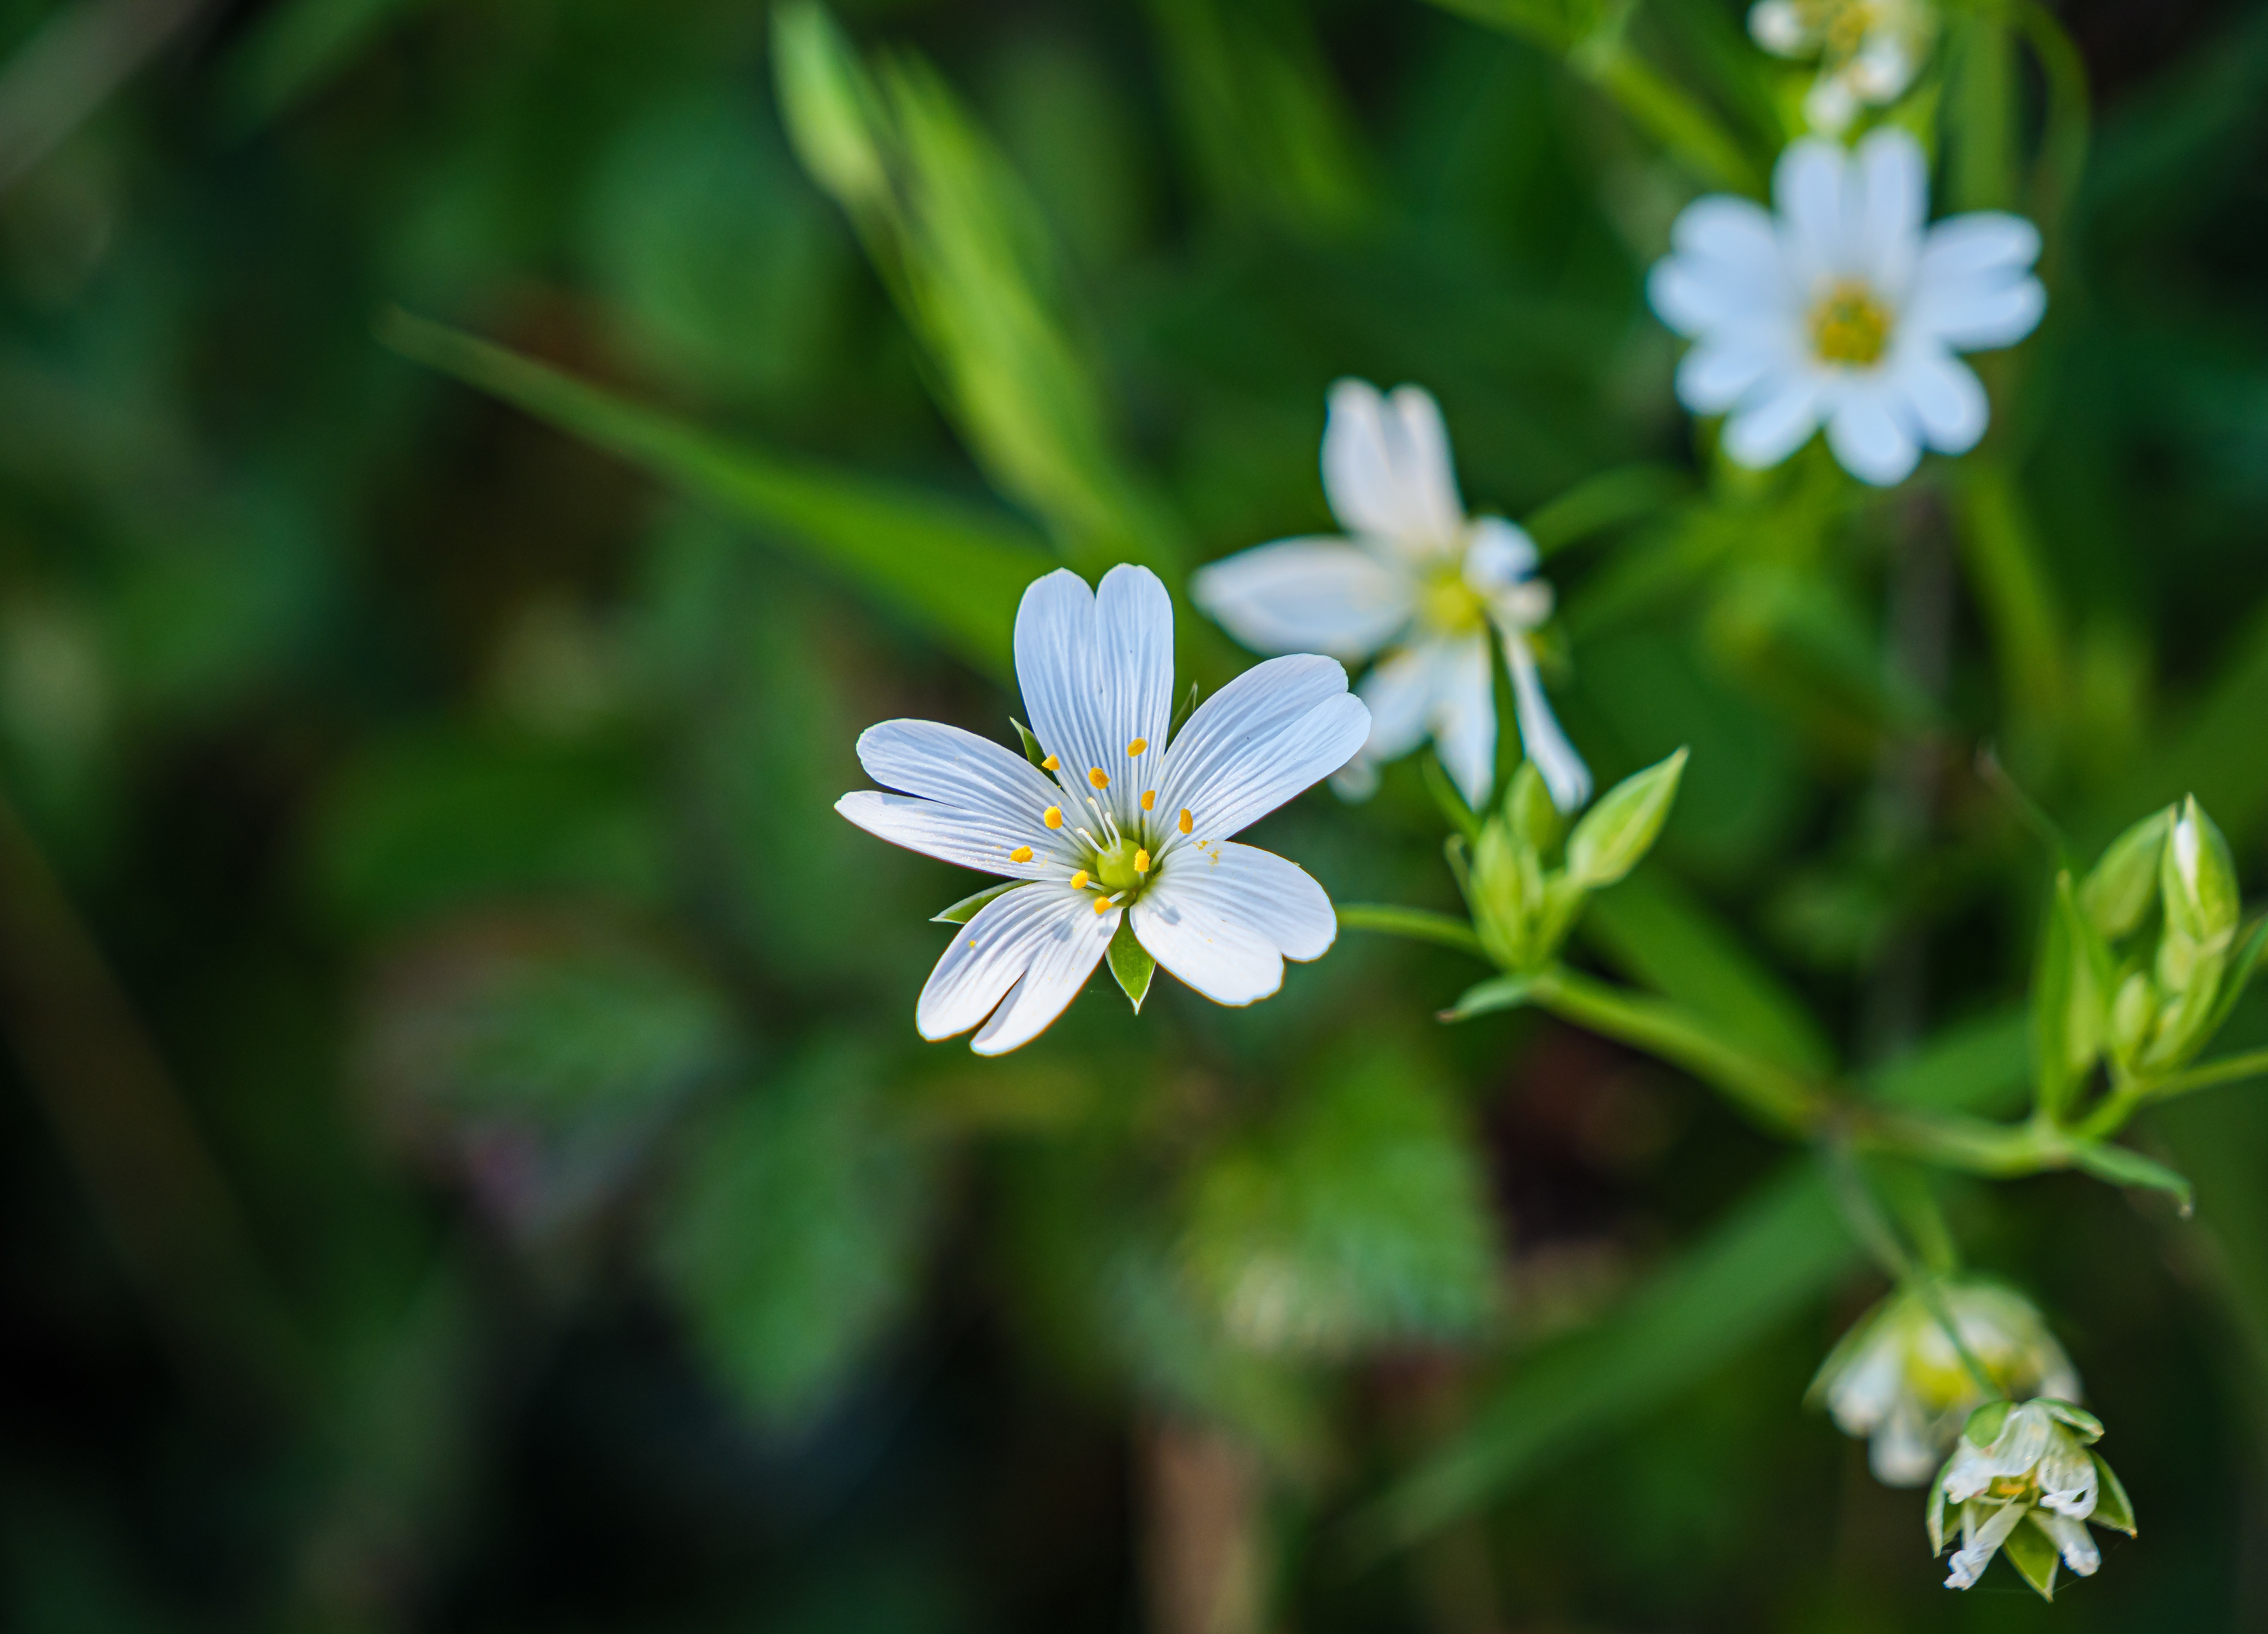 야생에서 크고 있는 별꽃 풀의 하얀 꽃과 줄기 그리고 잎을 확대하여 찍은 사진